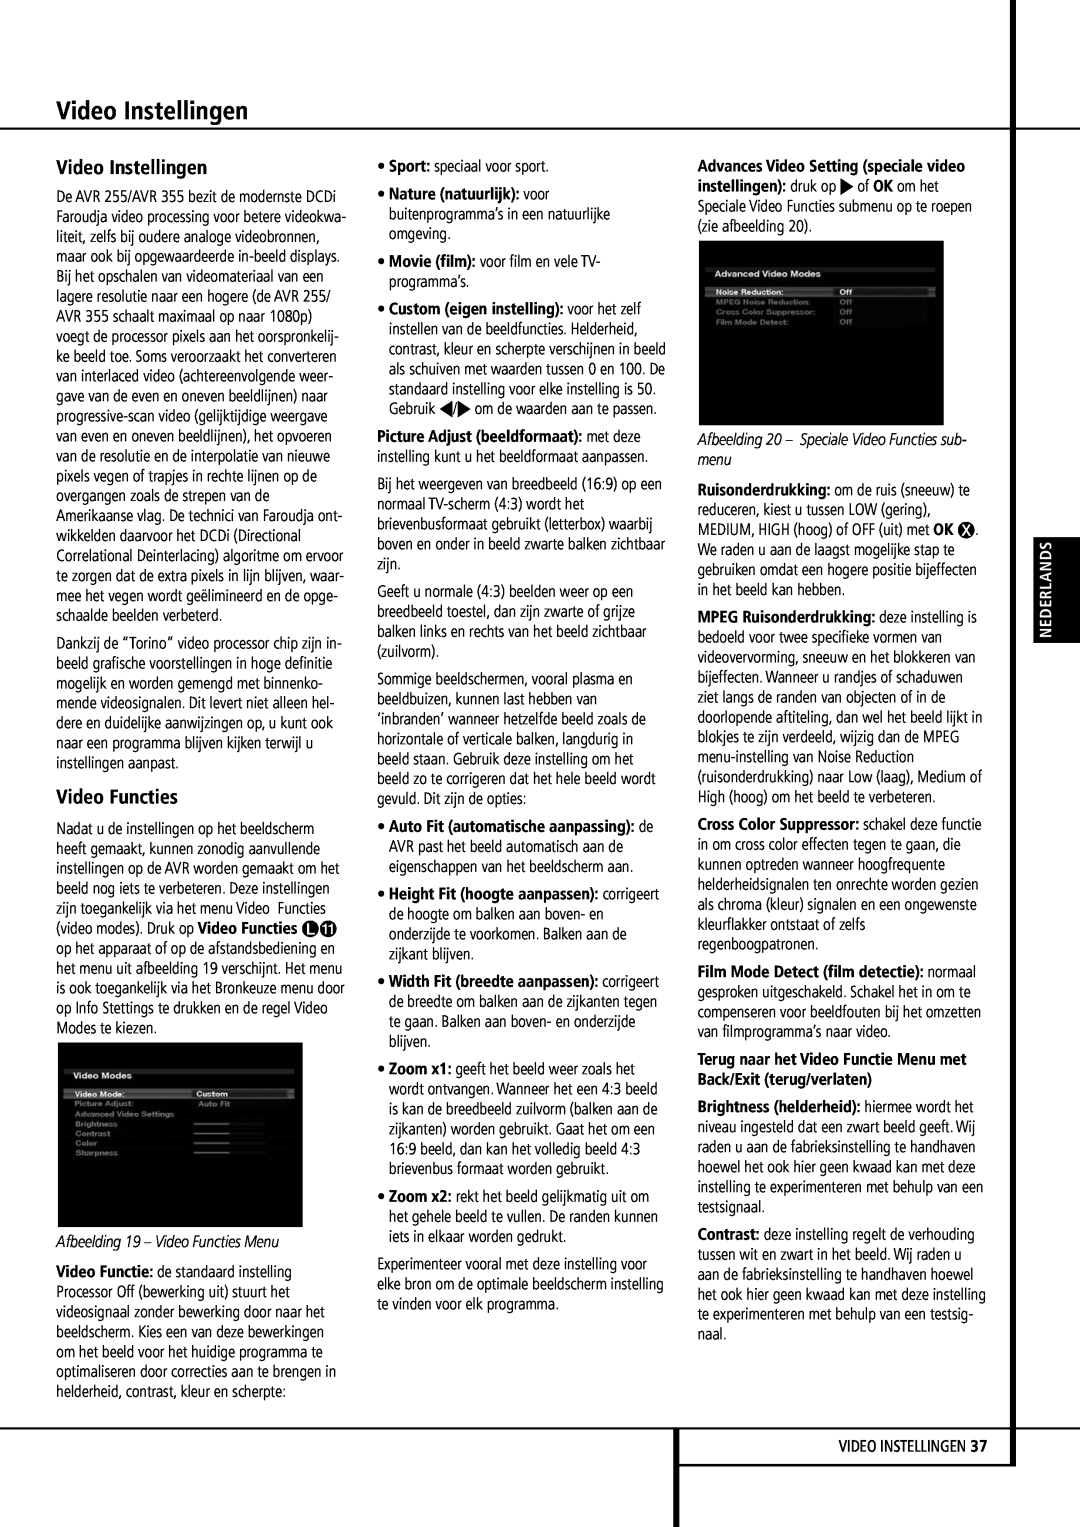 Harman-Kardon 355, 255 manual Video Instellingen, Afbeelding 19 – Video Functies Menu, Nederlands 